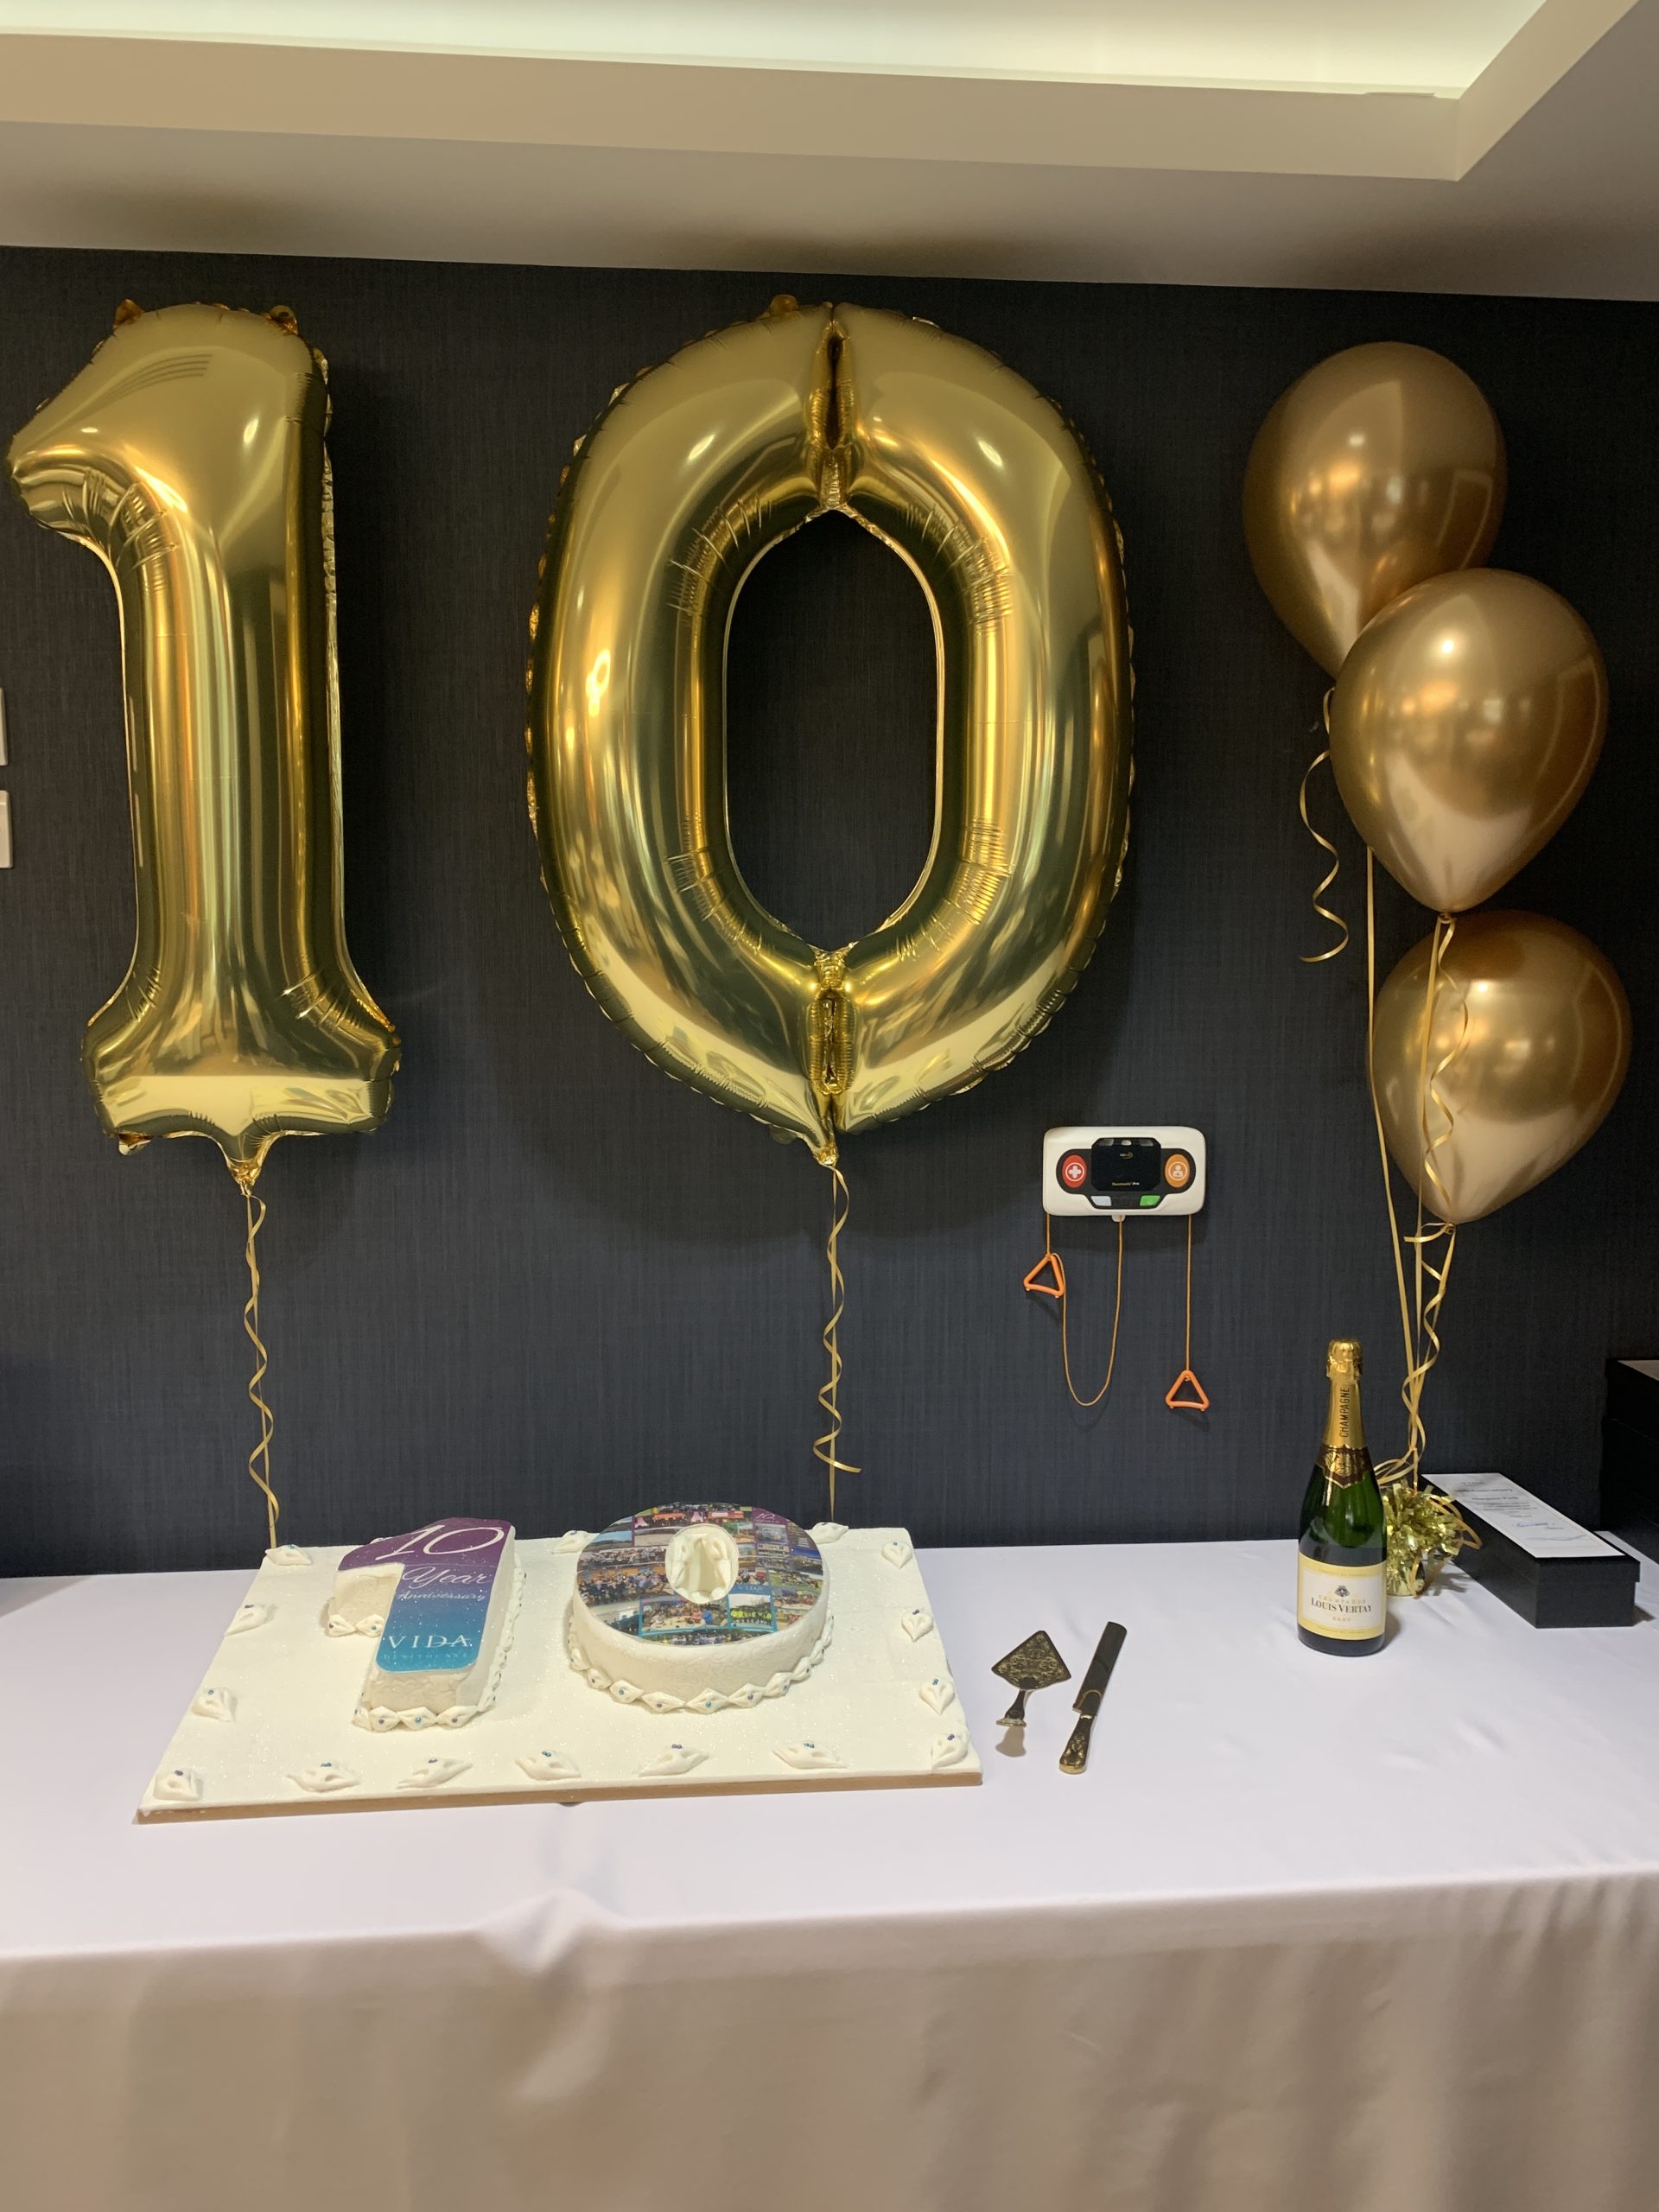 10 year celebration